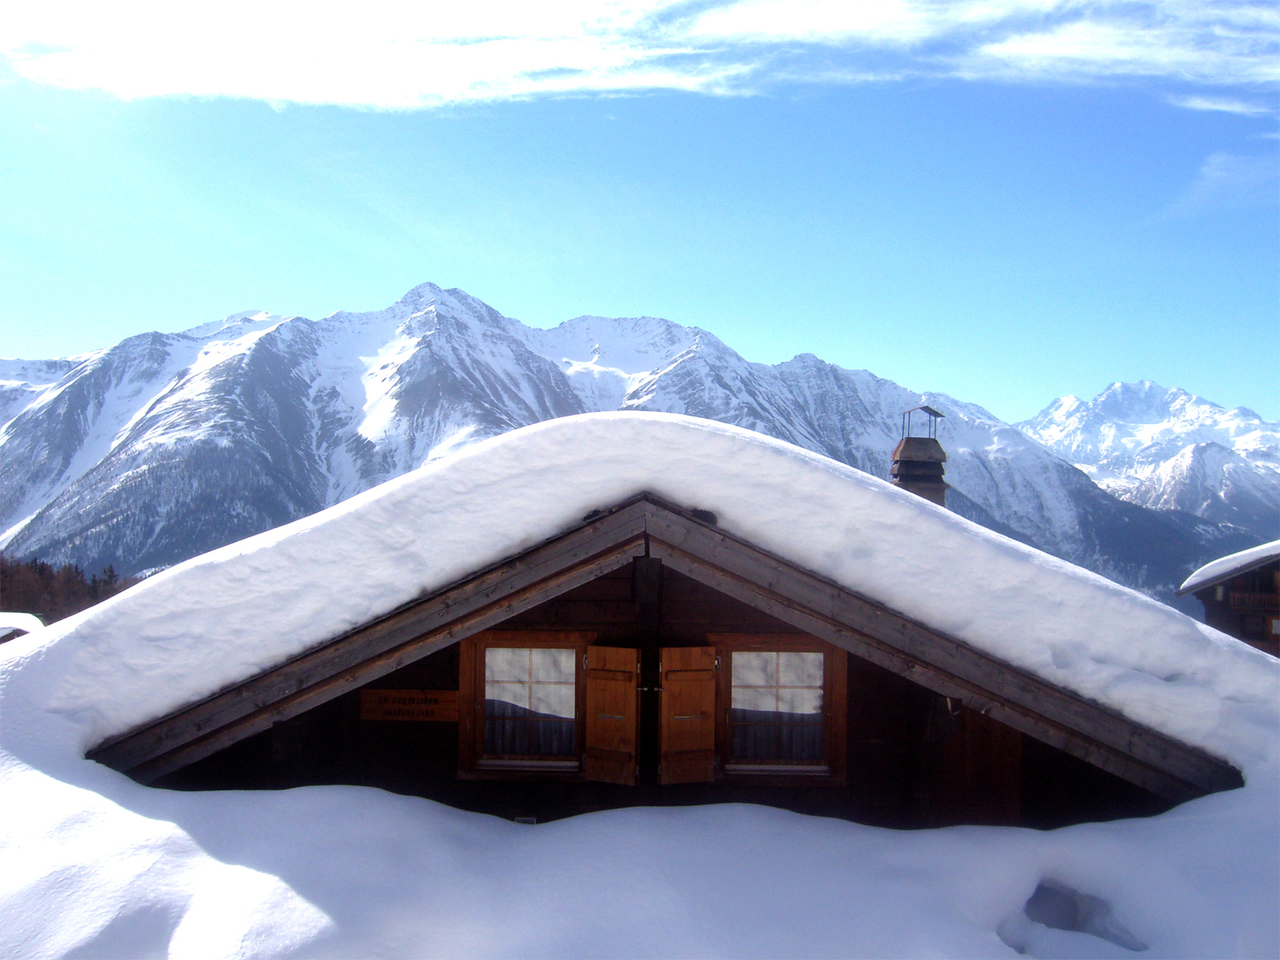 snow-houses-in-switzerland-1530421-1280x960